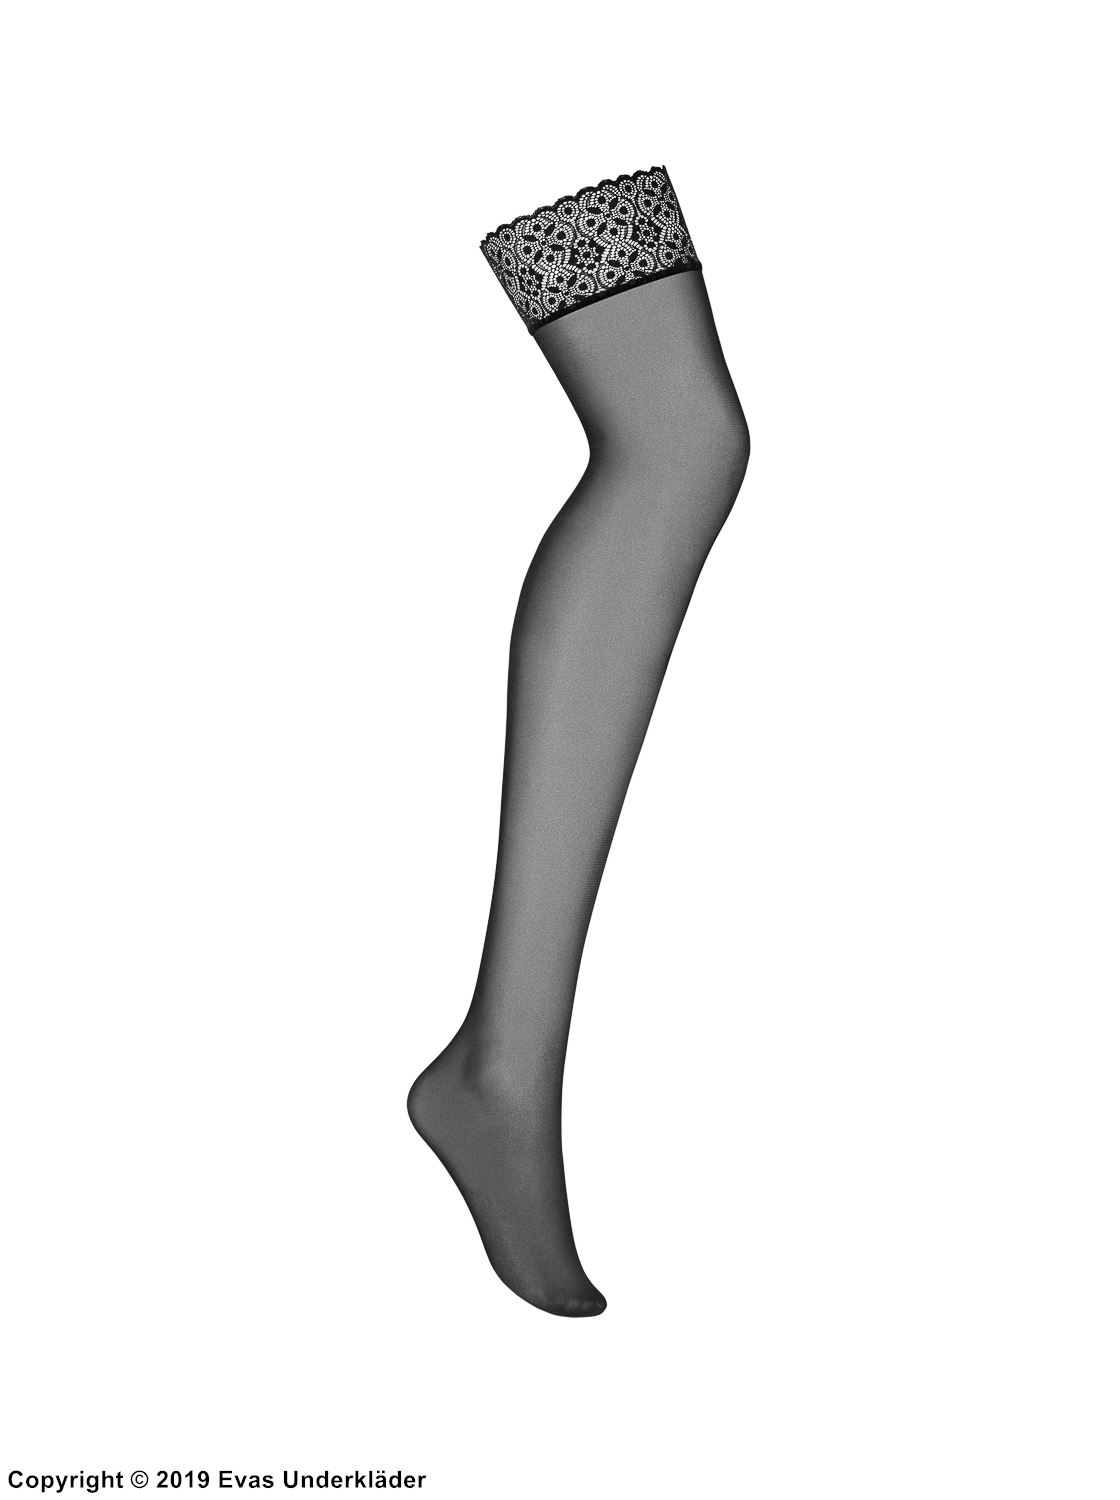 Stockings, lace trim, elegant design